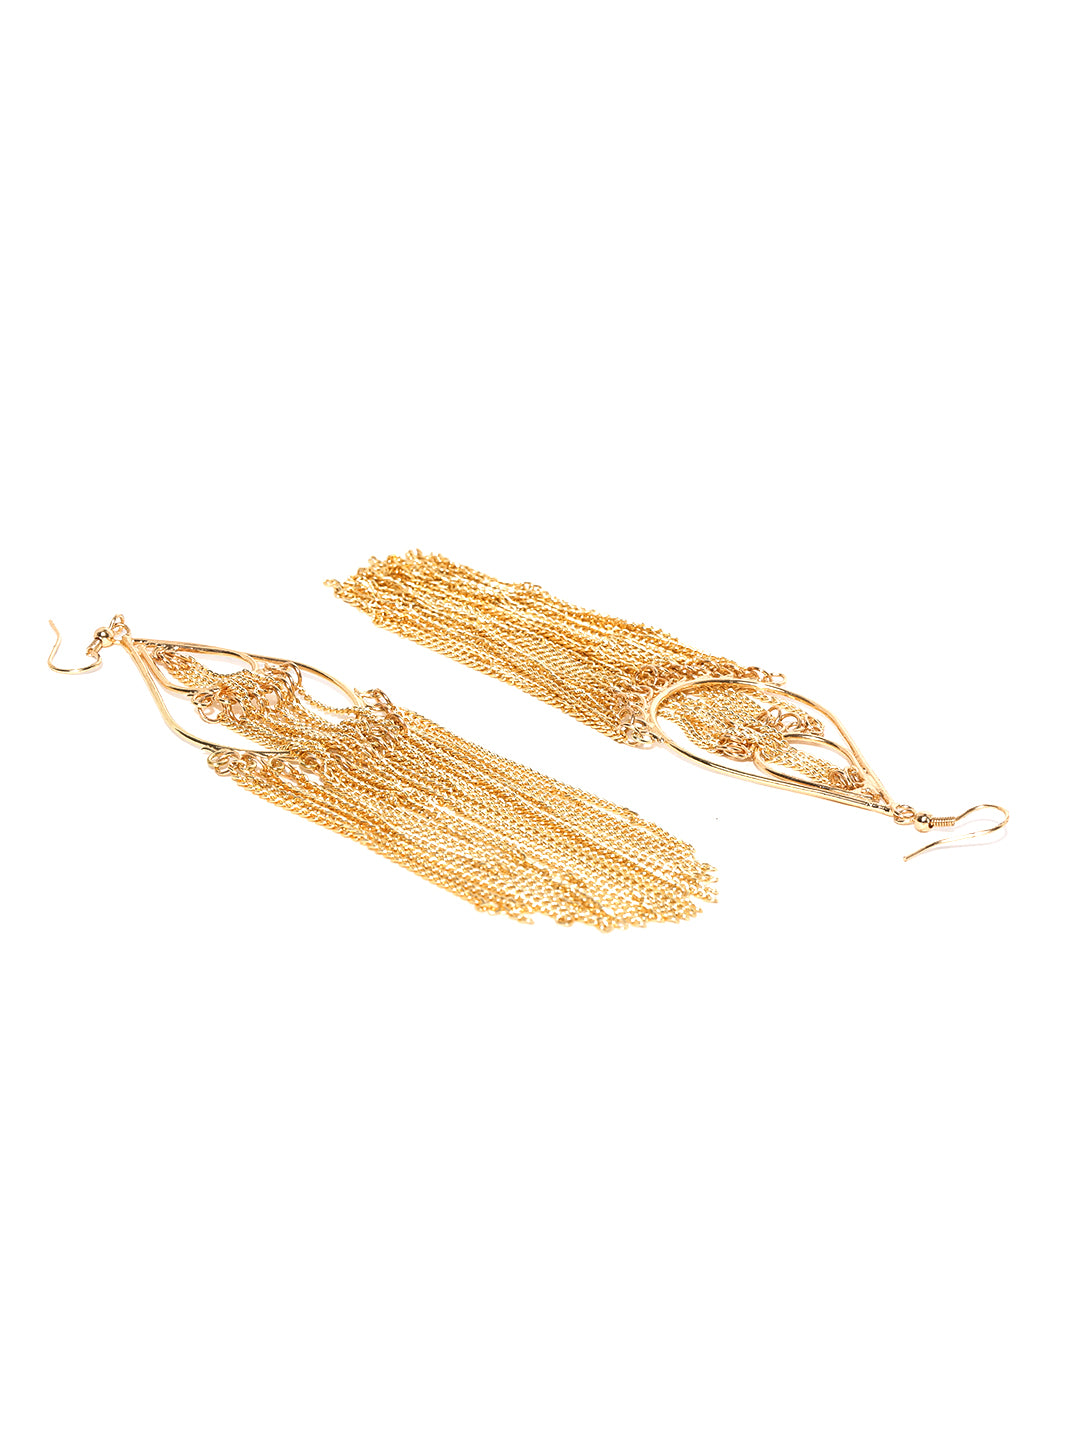 Fashionable gold tassel earrings